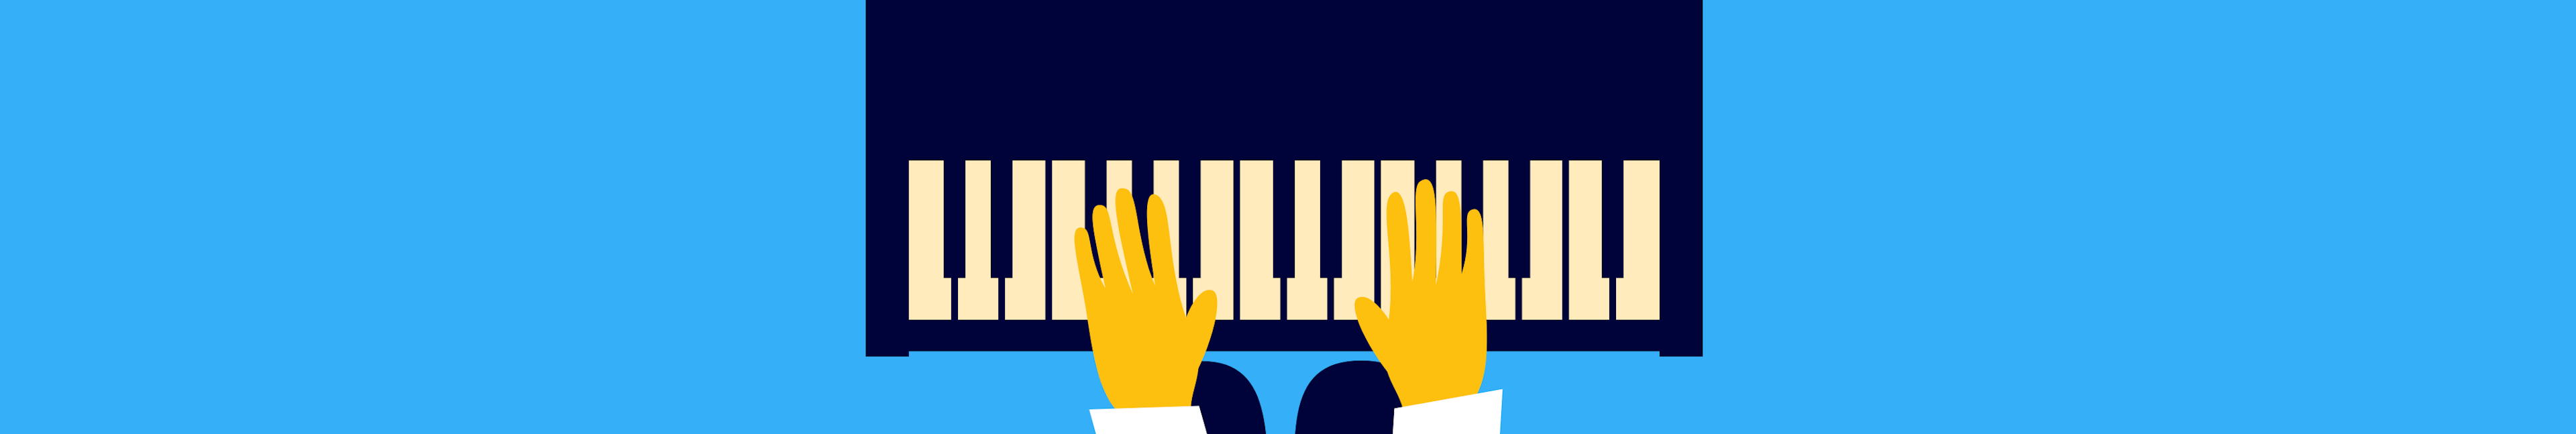 Czerny - Exercices pour pianistes débutants